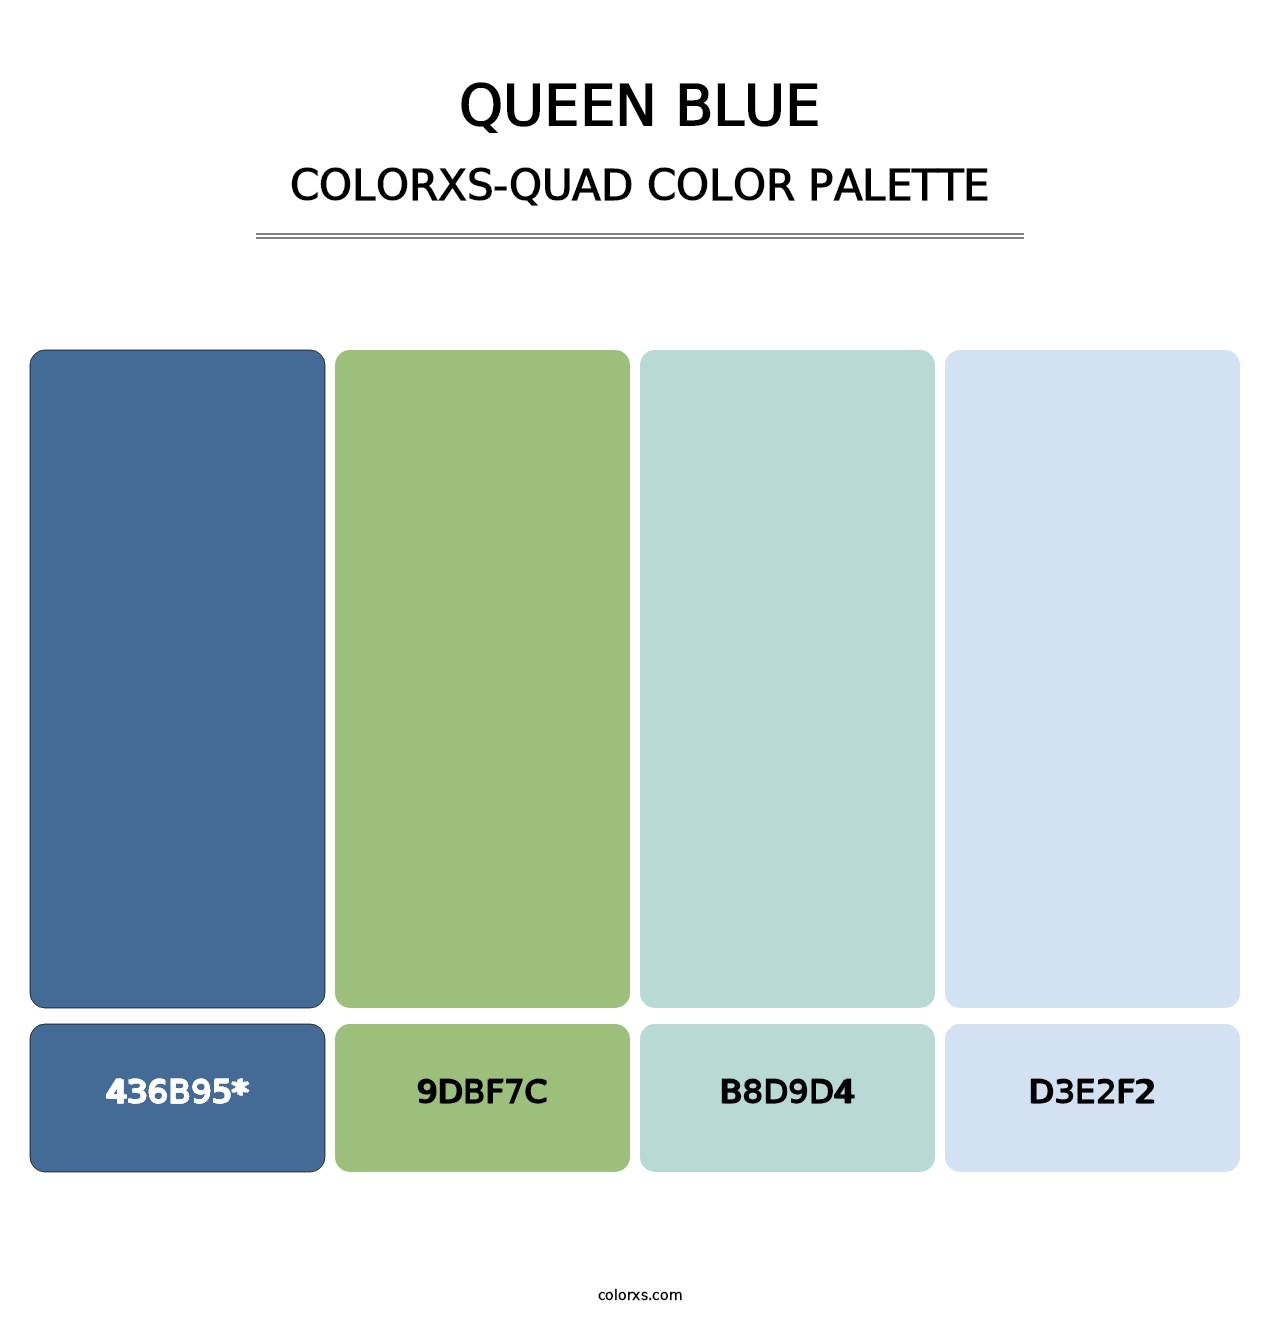 Queen Blue - Colorxs Quad Palette